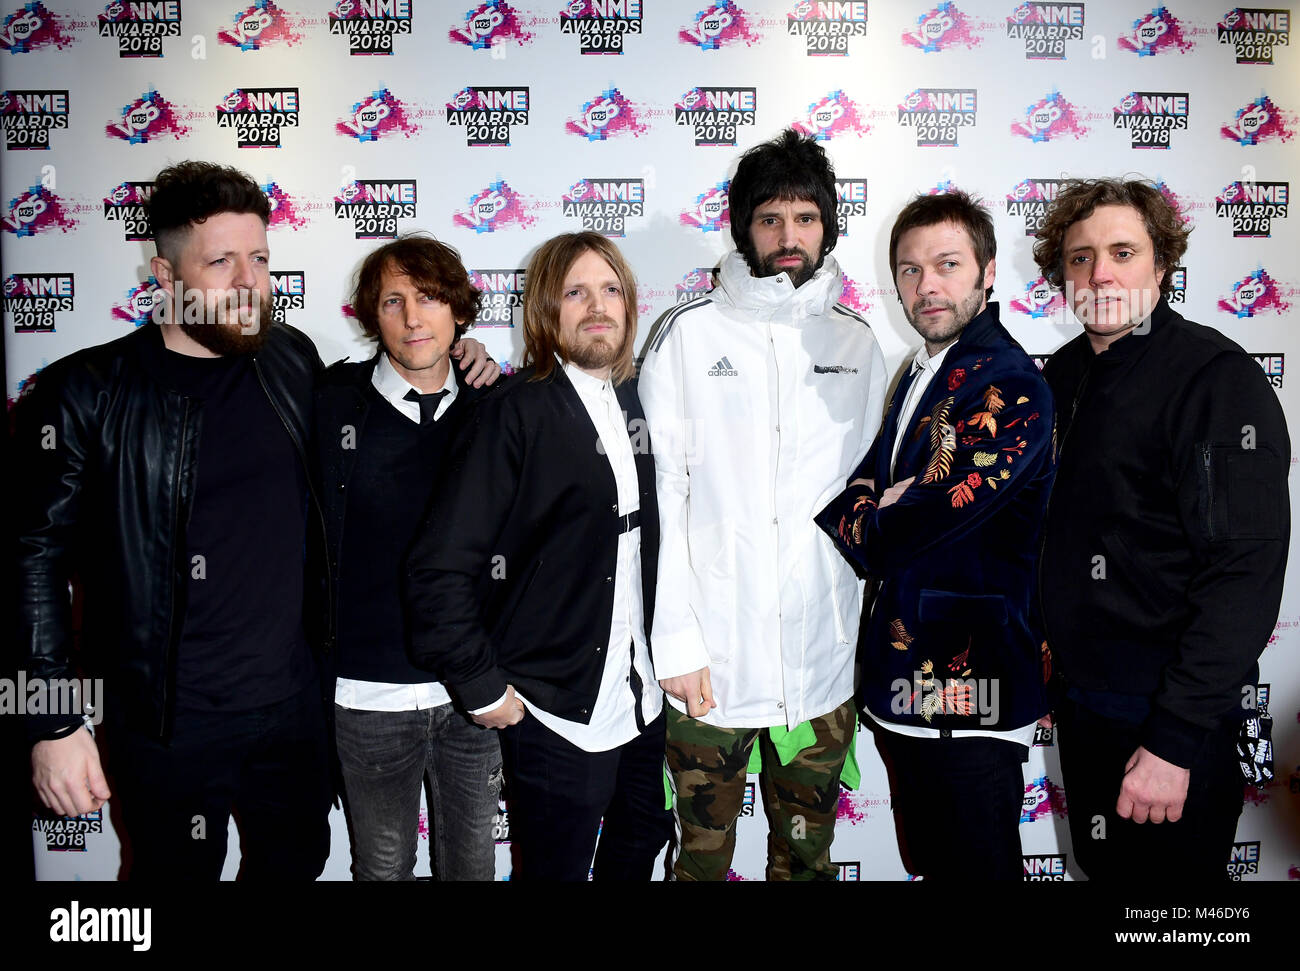 Sergio Pizzorno, Tom Meighan, Chris Edwards, Ian Matthews, Chris Karloff, Esche Hannis von Kasabian für die VO 5 NME Awards 2018 in der O2 Academy Brixton, London anreisen. Stockfoto